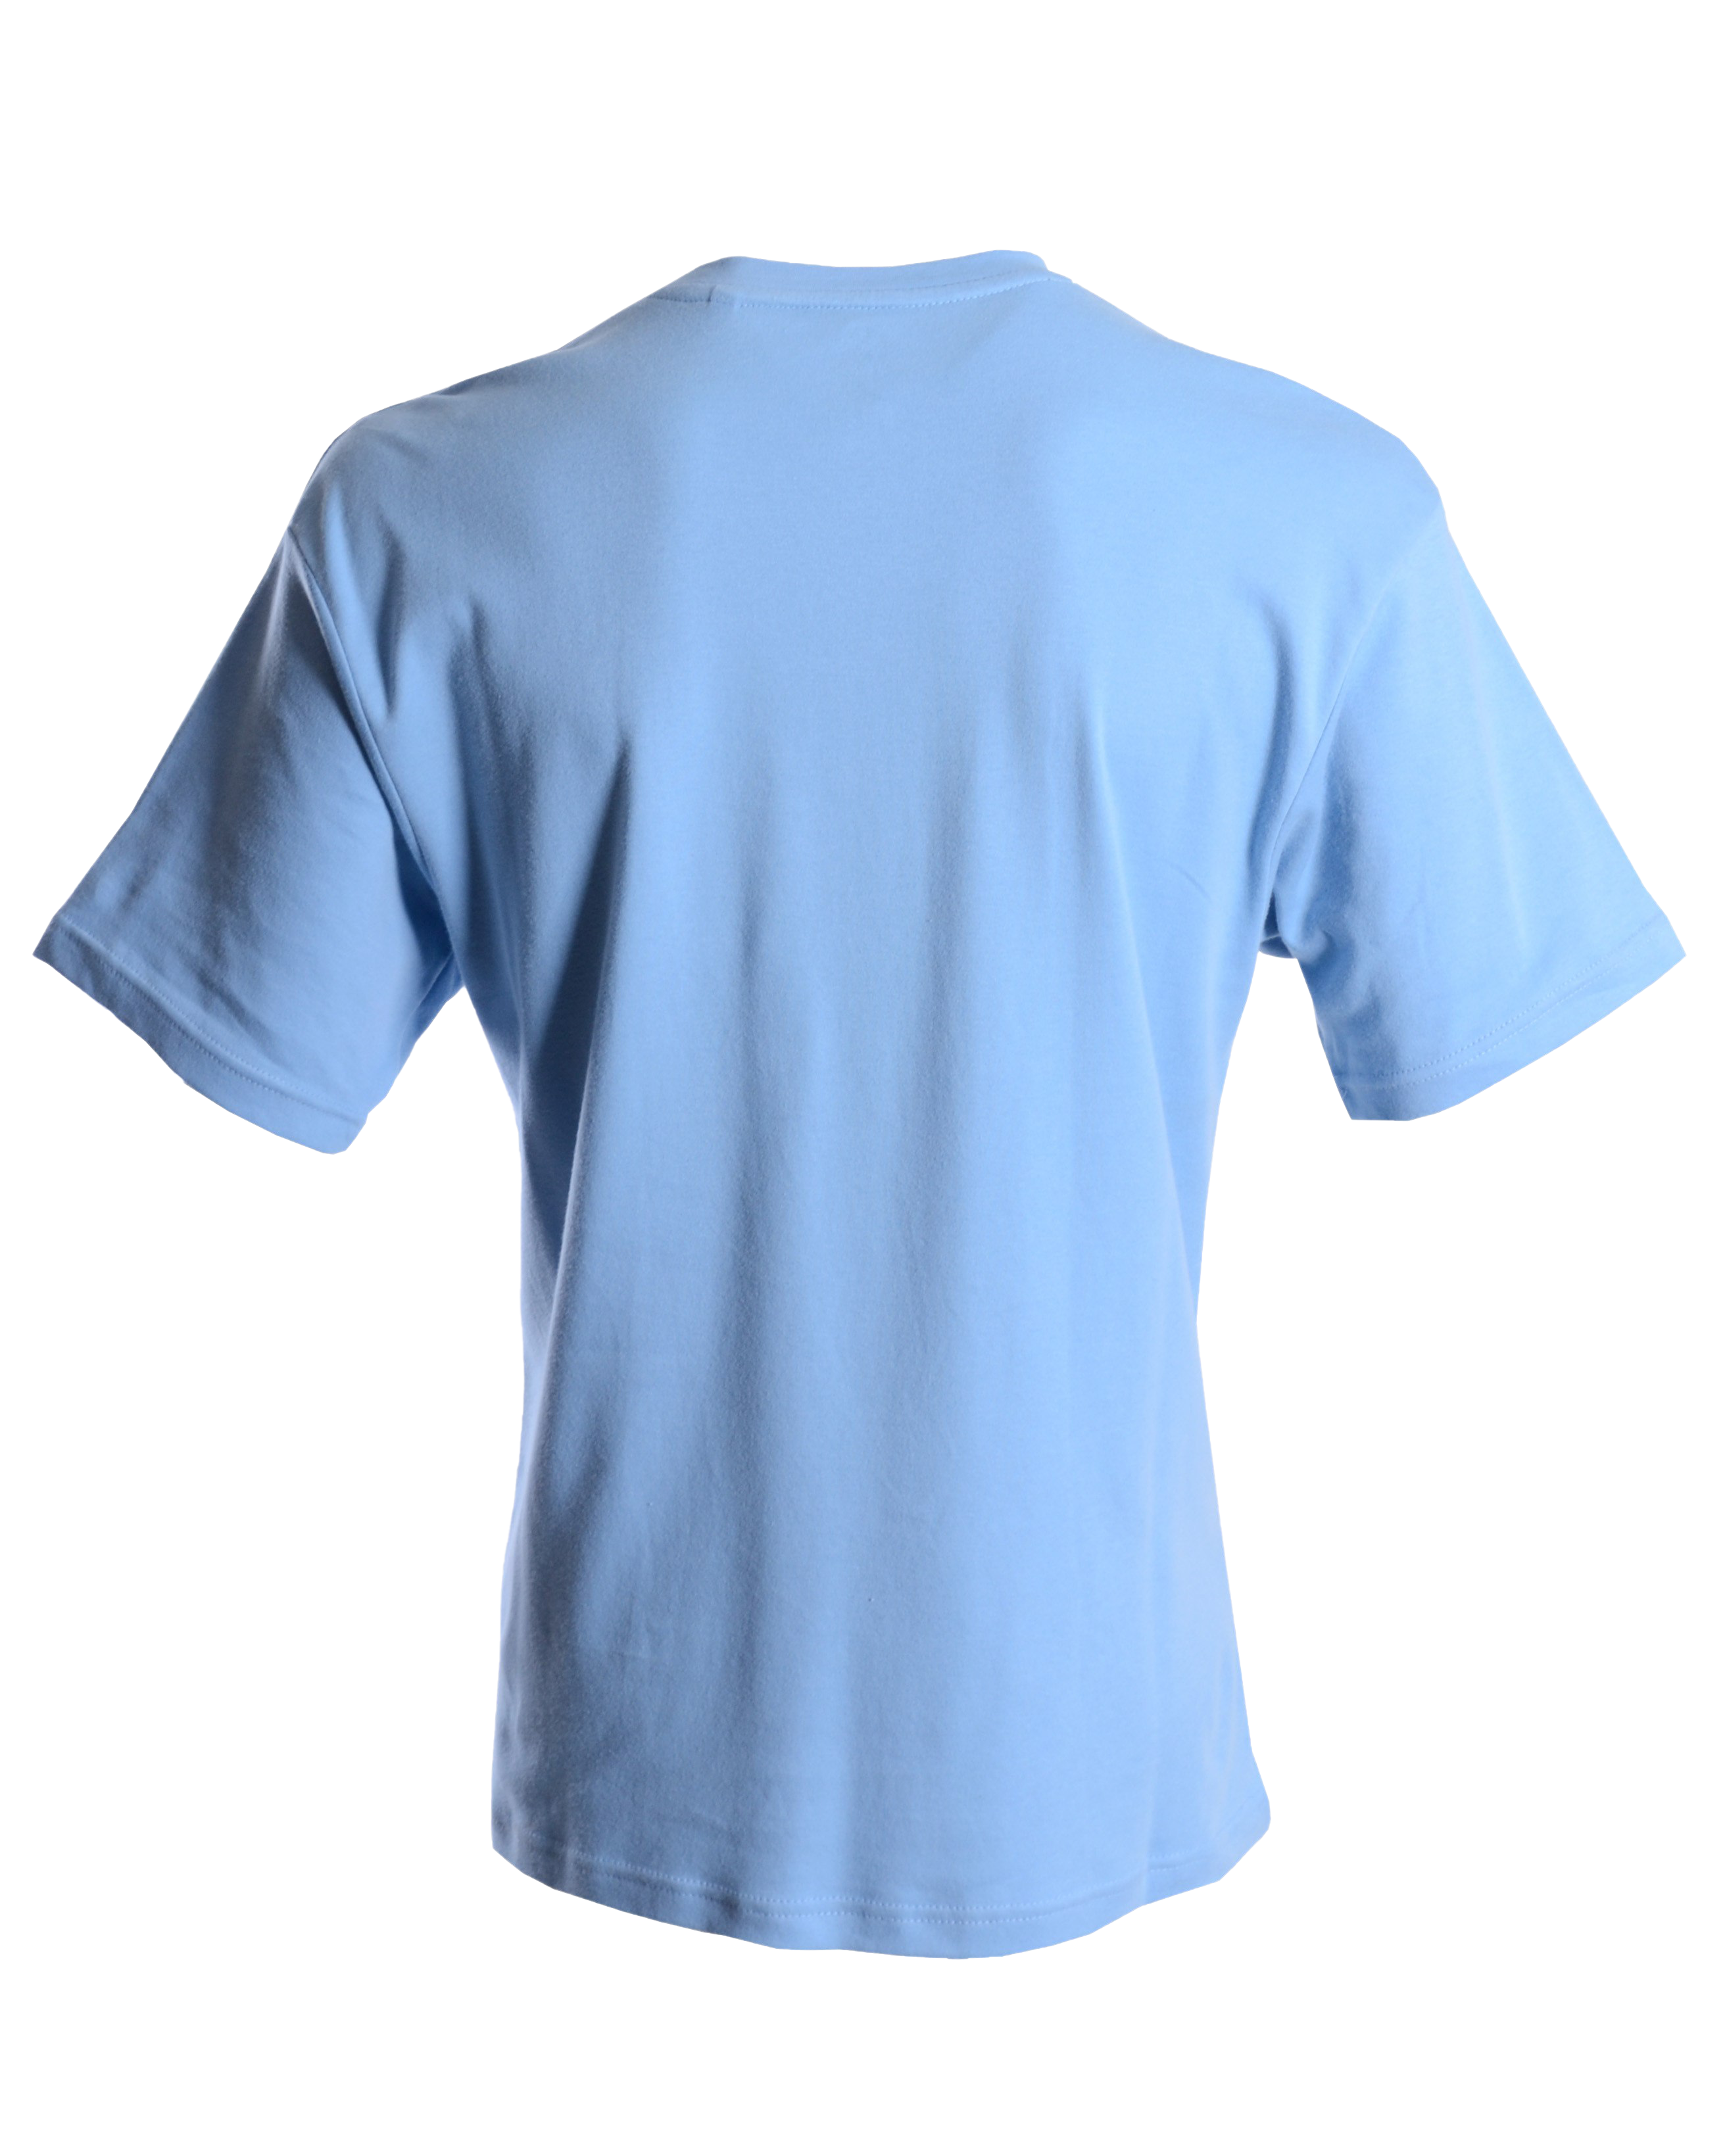 Plain Blue T-Shirt PNG Hochwertiges Bild